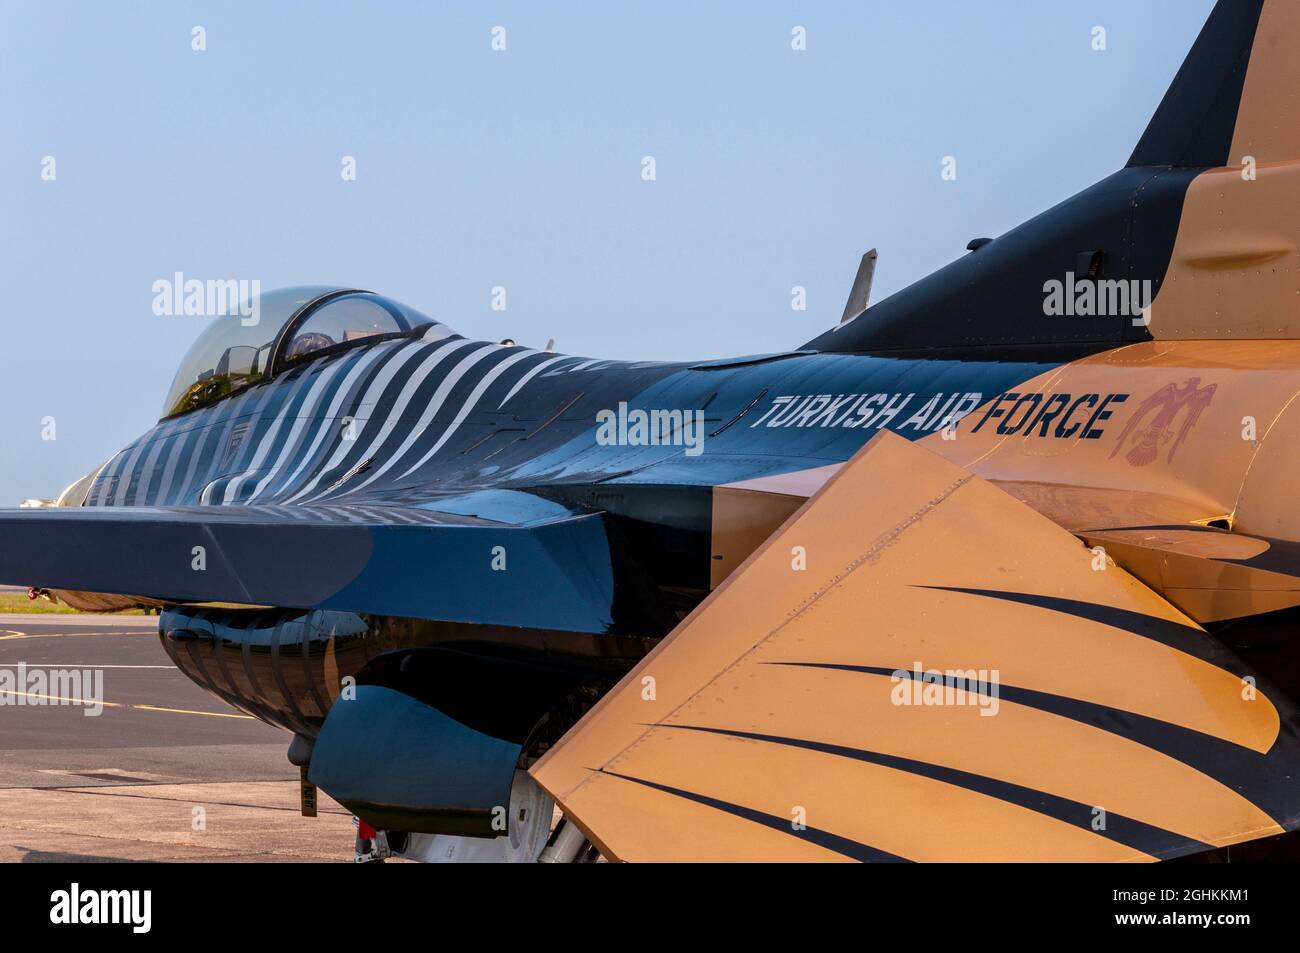 Solo Turk, Turkish Air Force General Dynamics F-16 Kampfflugzeug von Falcon auf der RAF Waddington Airshow in Großbritannien. Spezielle bemalte Anzeige Flugzeug Stockfoto